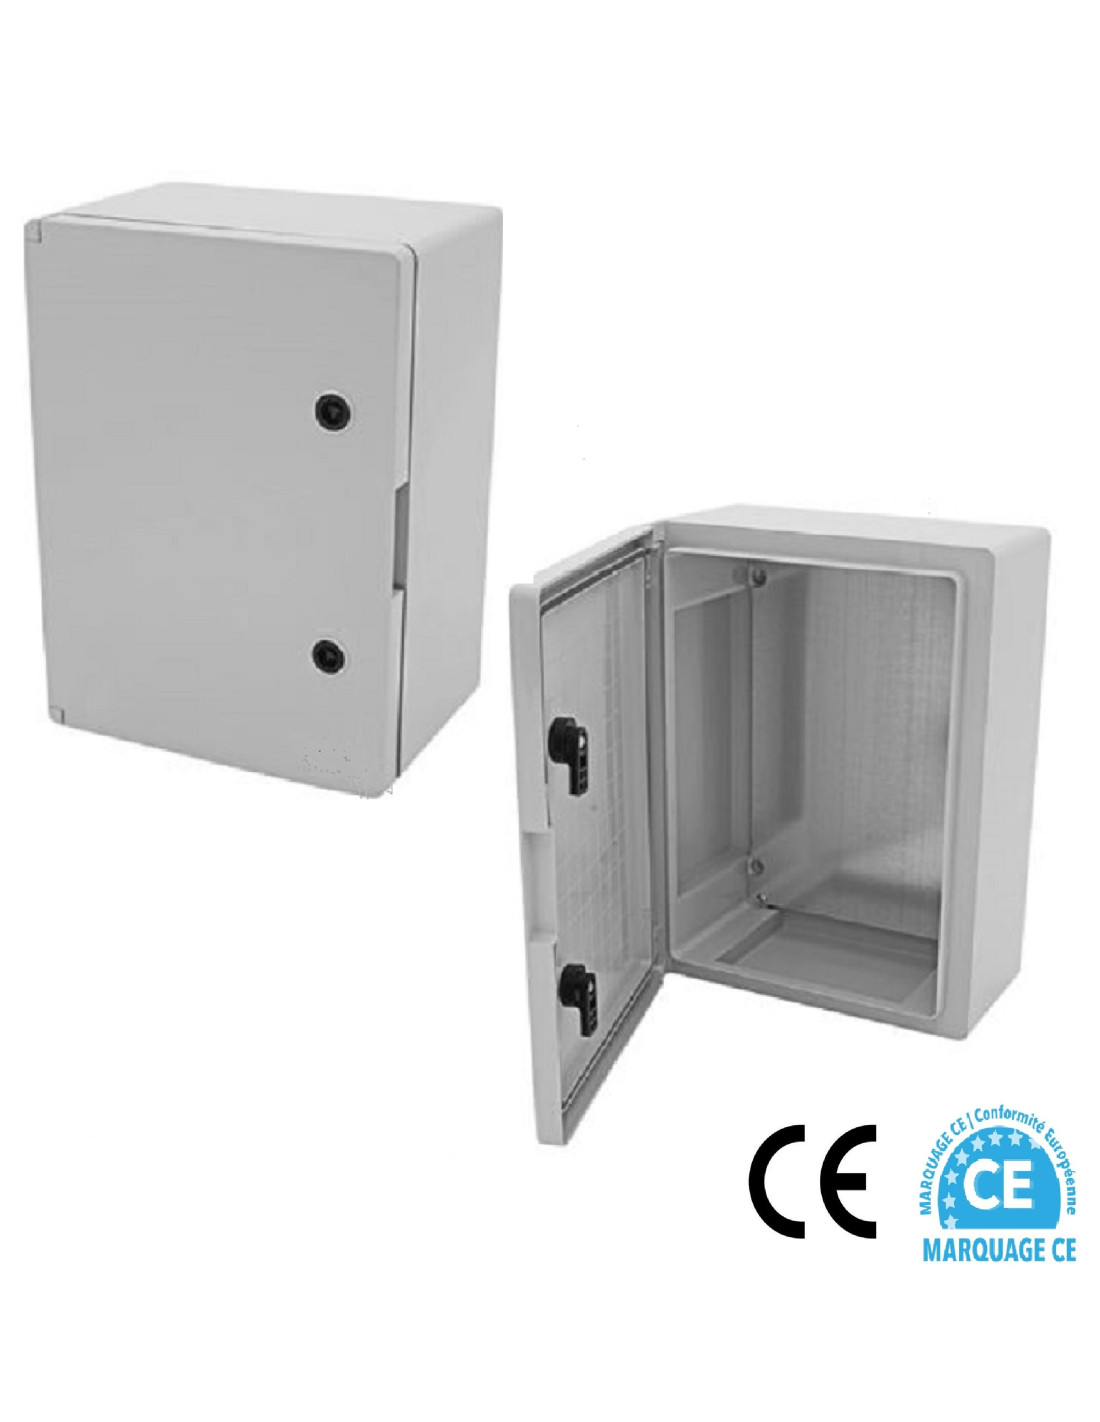 Coffrets électriques standards : Coffret électrique 500x400x200